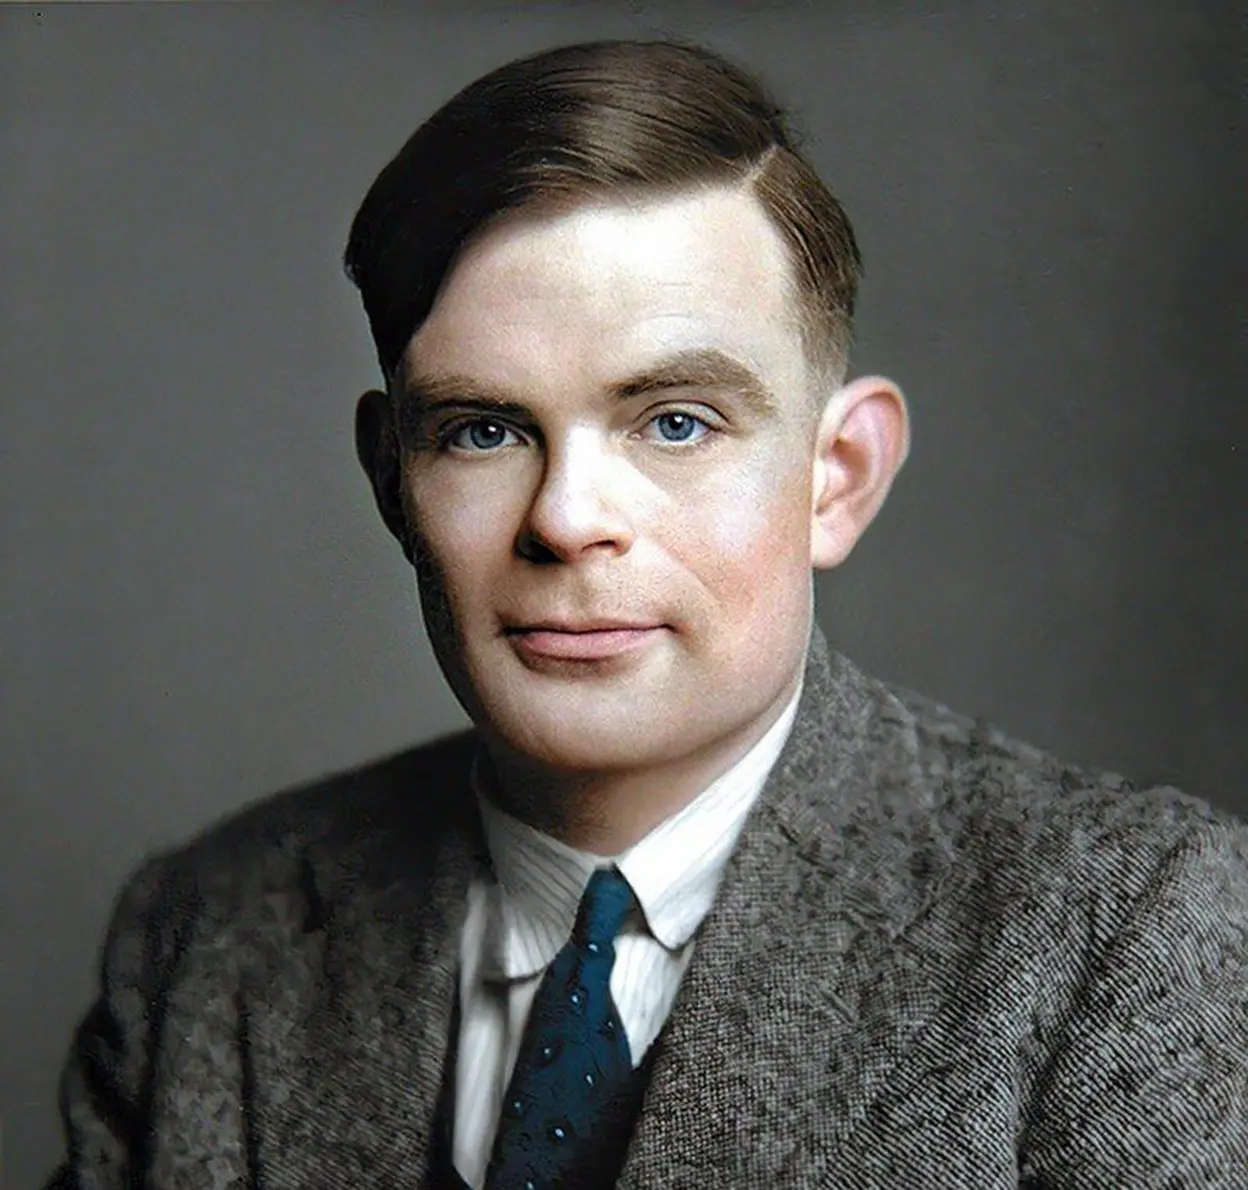 Fotografía de Alan Turing